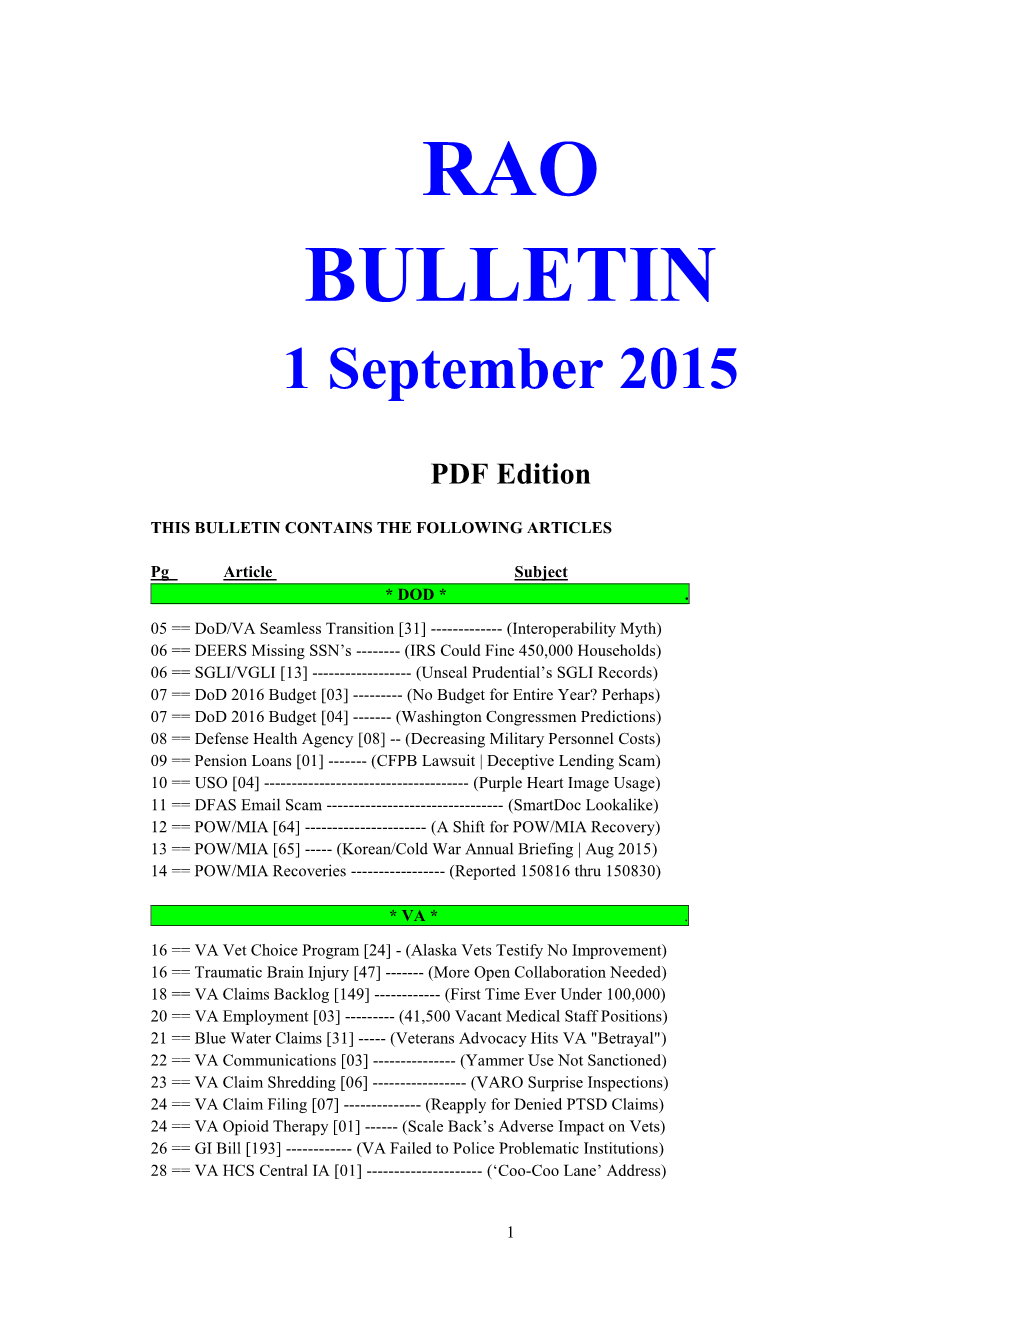 RAO BULLETIN 1 September 2015